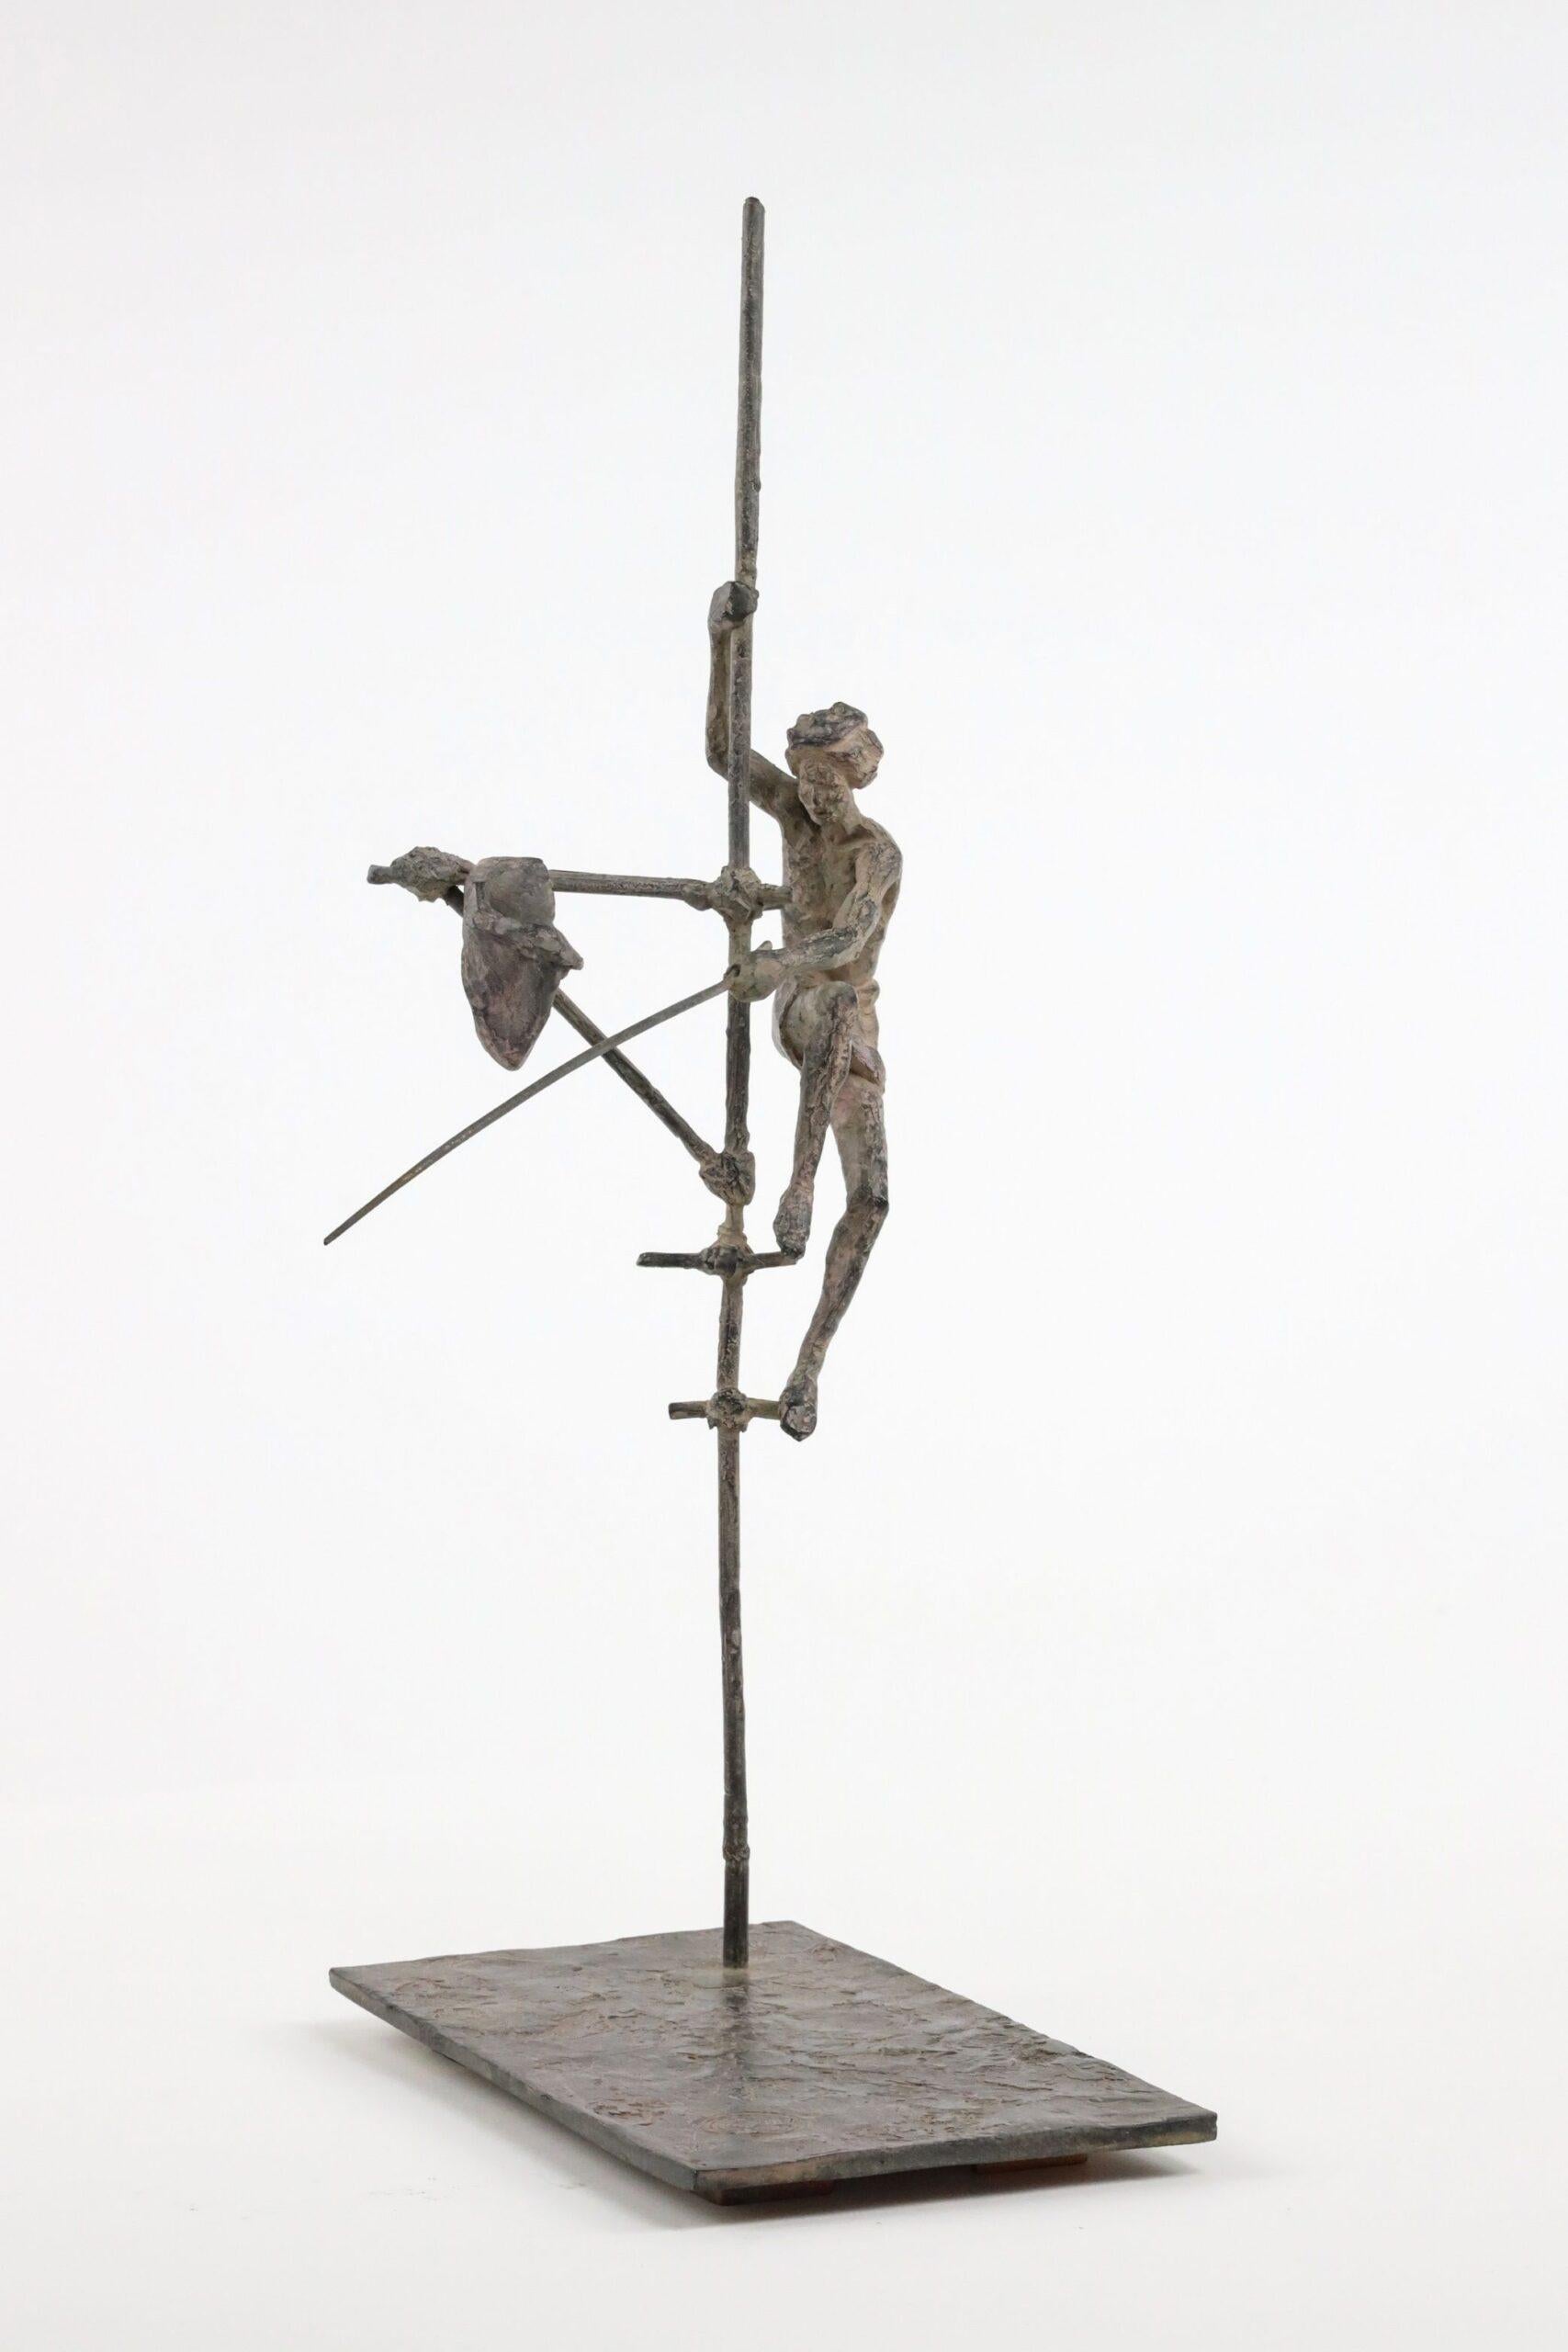 Pêcheur sur échasses III est une sculpture en bronze de l'artiste contemporaine française Marine de Soos, dont les dimensions sont de 45 × 25 × 19 cm (17,7 × 9,8 × 7,5 in). 
La sculpture est signée et numérotée, elle fait partie d'une édition